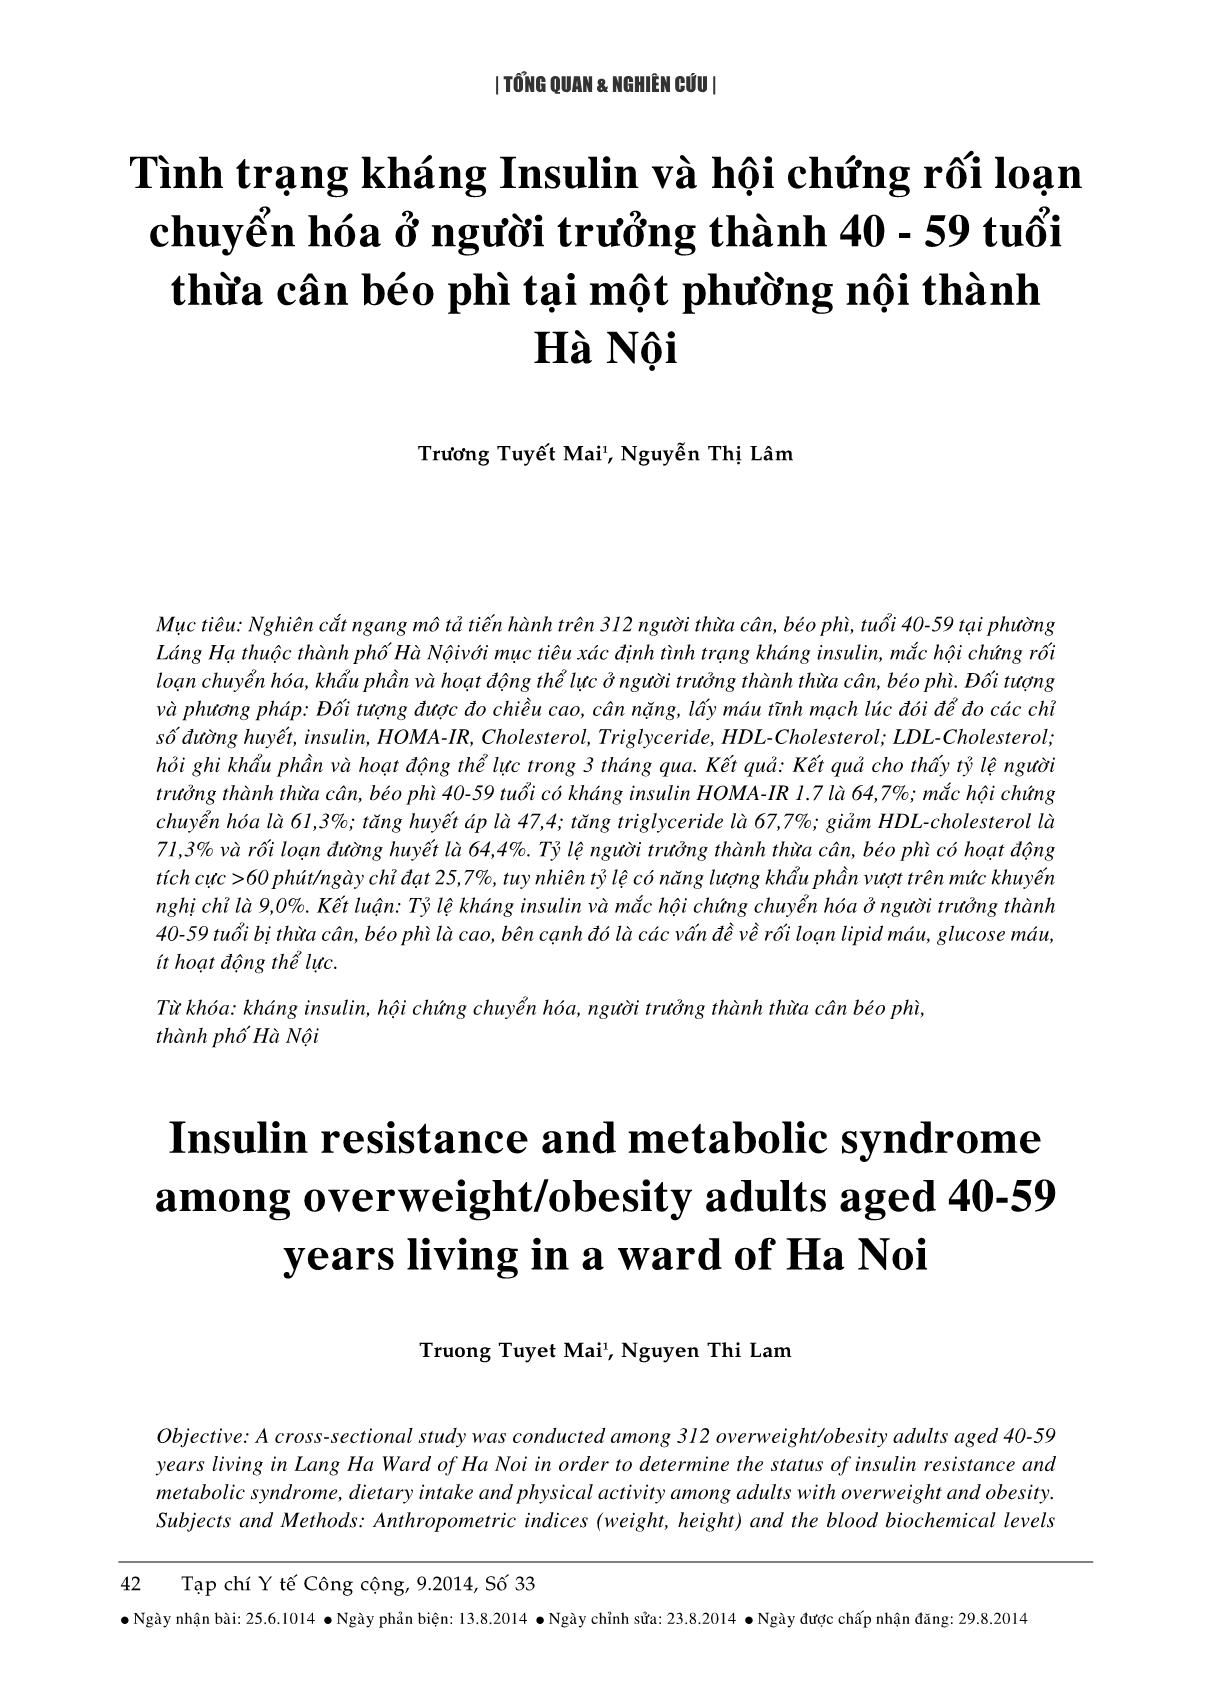 Tình trạng kháng Insulin và hội chứng rối loạn chuyển hóa ở người trưởng thành 40 - 59 tuổi thừa cân béo phì tại một phường nội thành Hà Nội trang 1